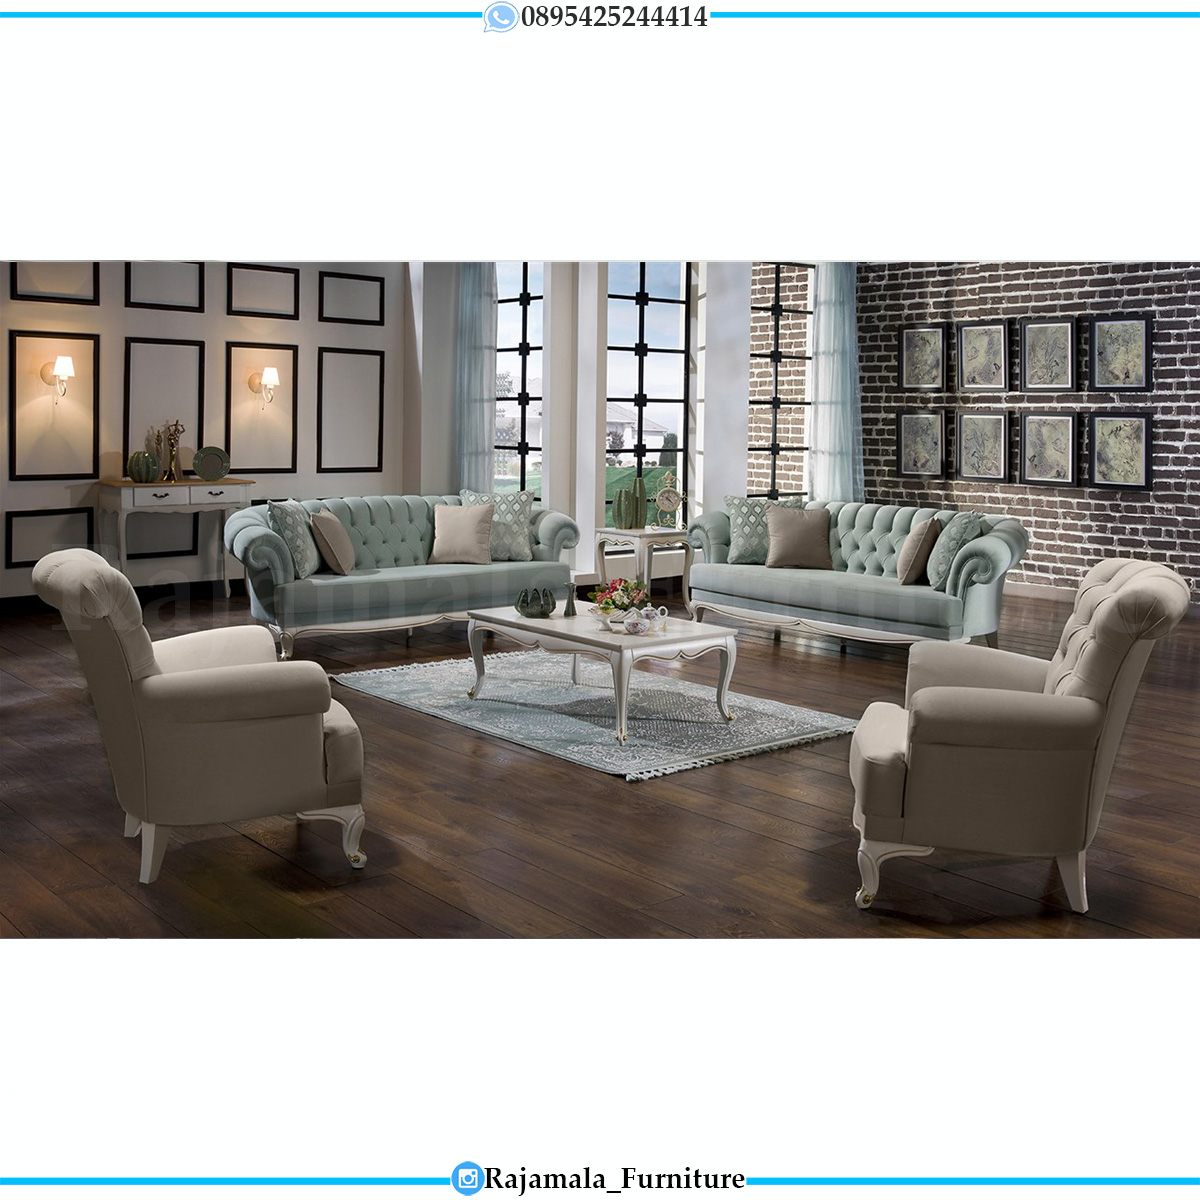 Sofa Tamu Shabby Chic Minimalis Design Putih Duco Luxury RM-0625